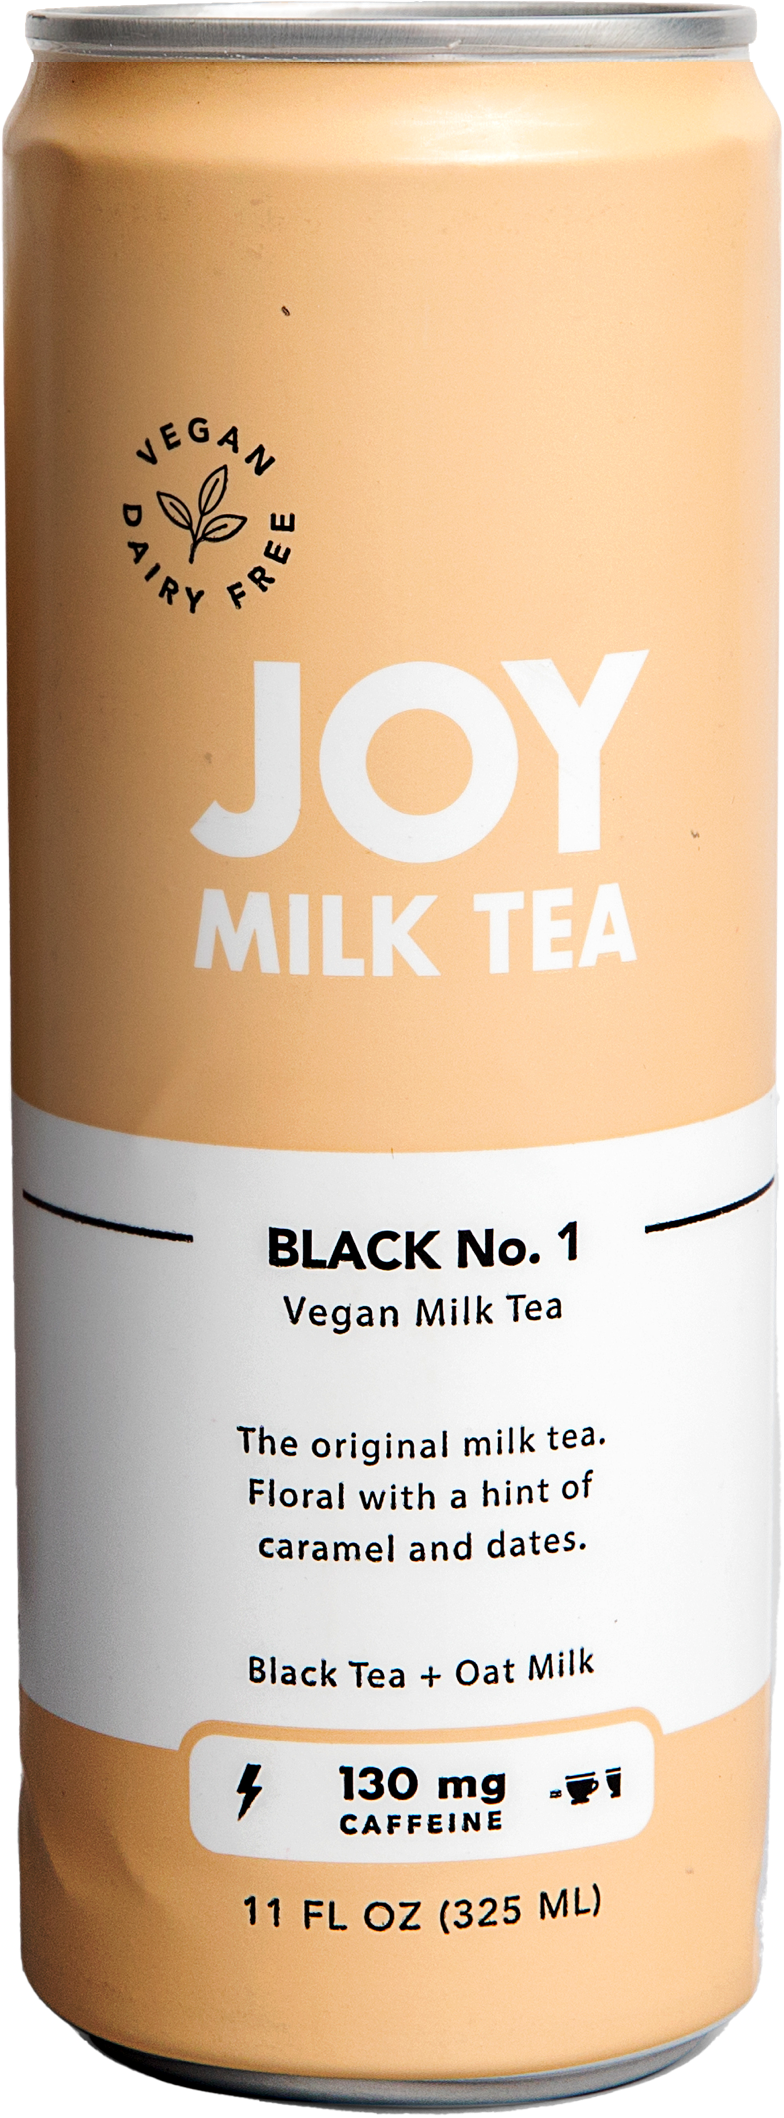 Joy Milk Tea - Black No. 1 Dairy Free Delivery & Pickup